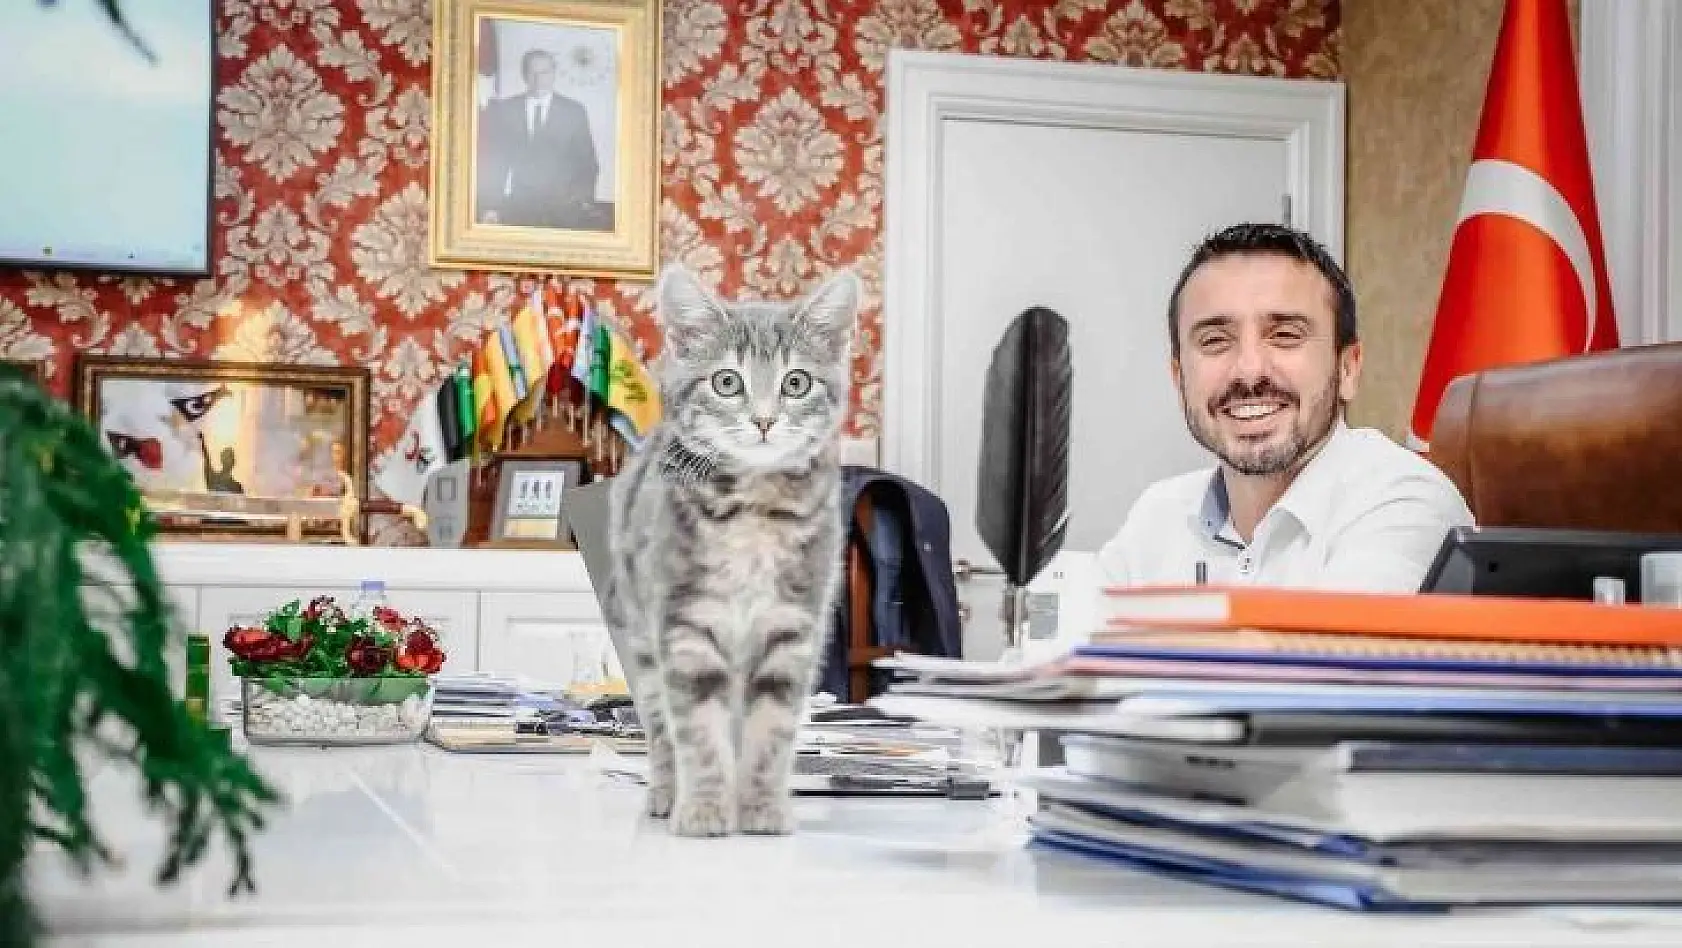 Başkan Tanır'ın sahiplendiği kedi, Kestel Belediyesinin neşesi oldu